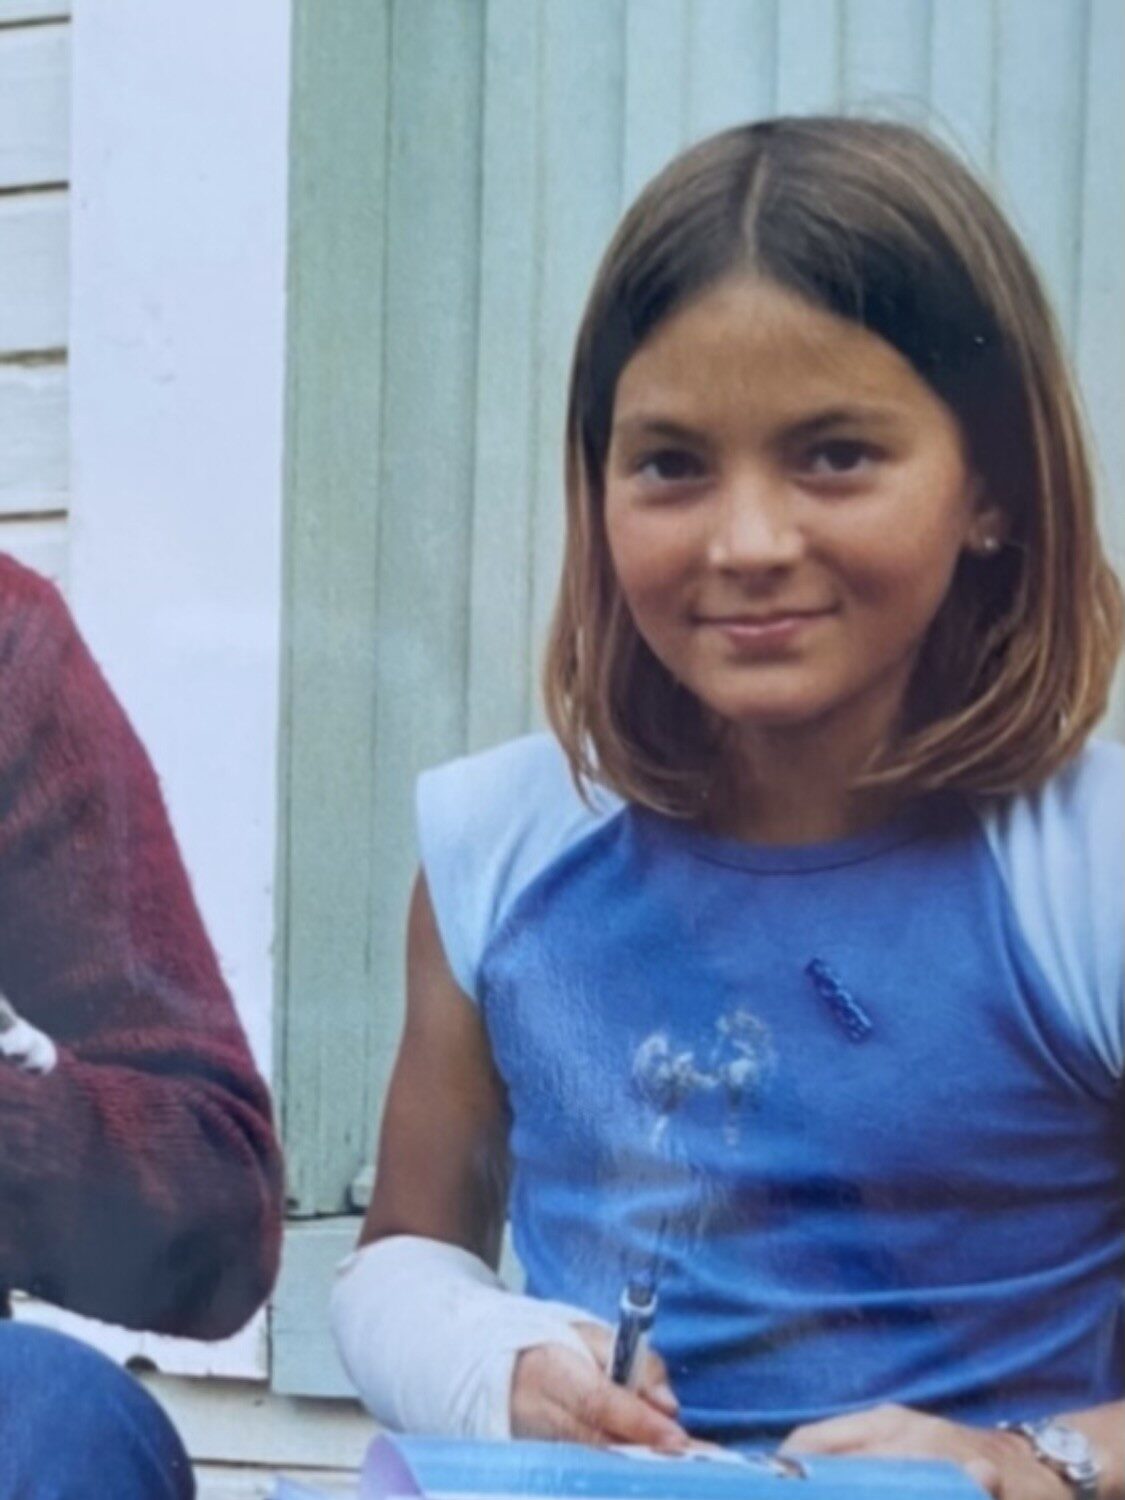 En ung jente med skulderlangt hår, iført en blå ermeløs skjorte, sitter utenfor ved et hus og holder en penn og notatbok. Hun har en bandasjert venstre underarm og smiler lett til kameraet.